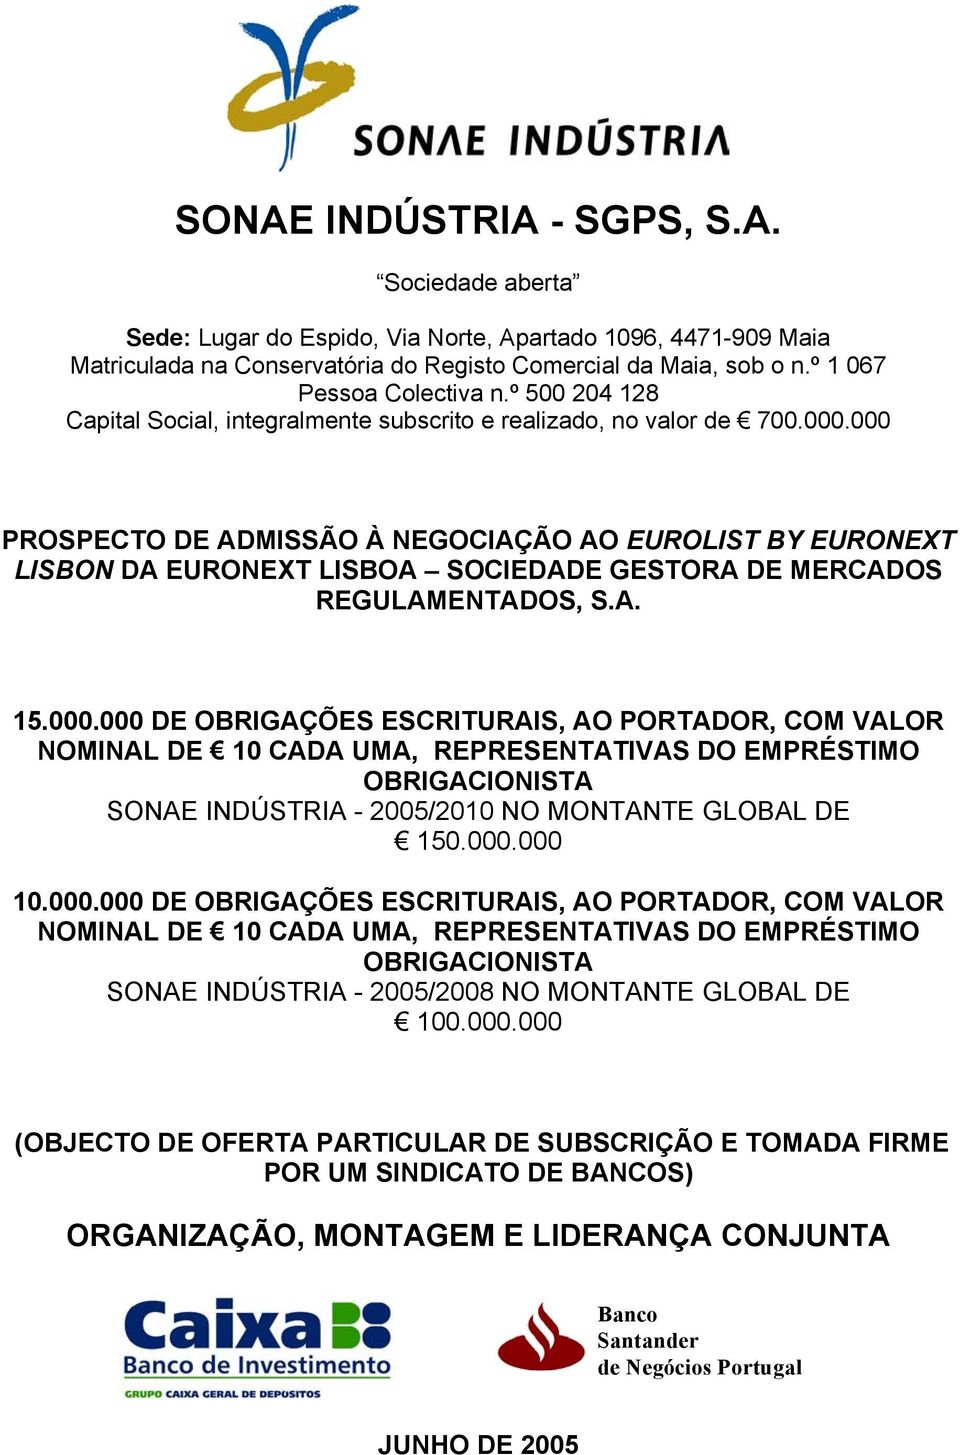 000 PROSPECTO DE ADMISSÃO À NEGOCIAÇÃO AO EUROLIST BY EURONEXT LISBON DA EURONEXT LISBOA SOCIEDADE GESTORA DE MERCADOS REGULAMENTADOS, S.A. 15.000.000 DE OBRIGAÇÕES ESCRITURAIS, AO PORTADOR, COM VALOR NOMINAL DE 10 CADA UMA, REPRESENTATIVAS DO EMPRÉSTIMO OBRIGACIONISTA SONAE INDÚSTRIA - 2005/2010 NO MONTANTE GLOBAL DE 150.